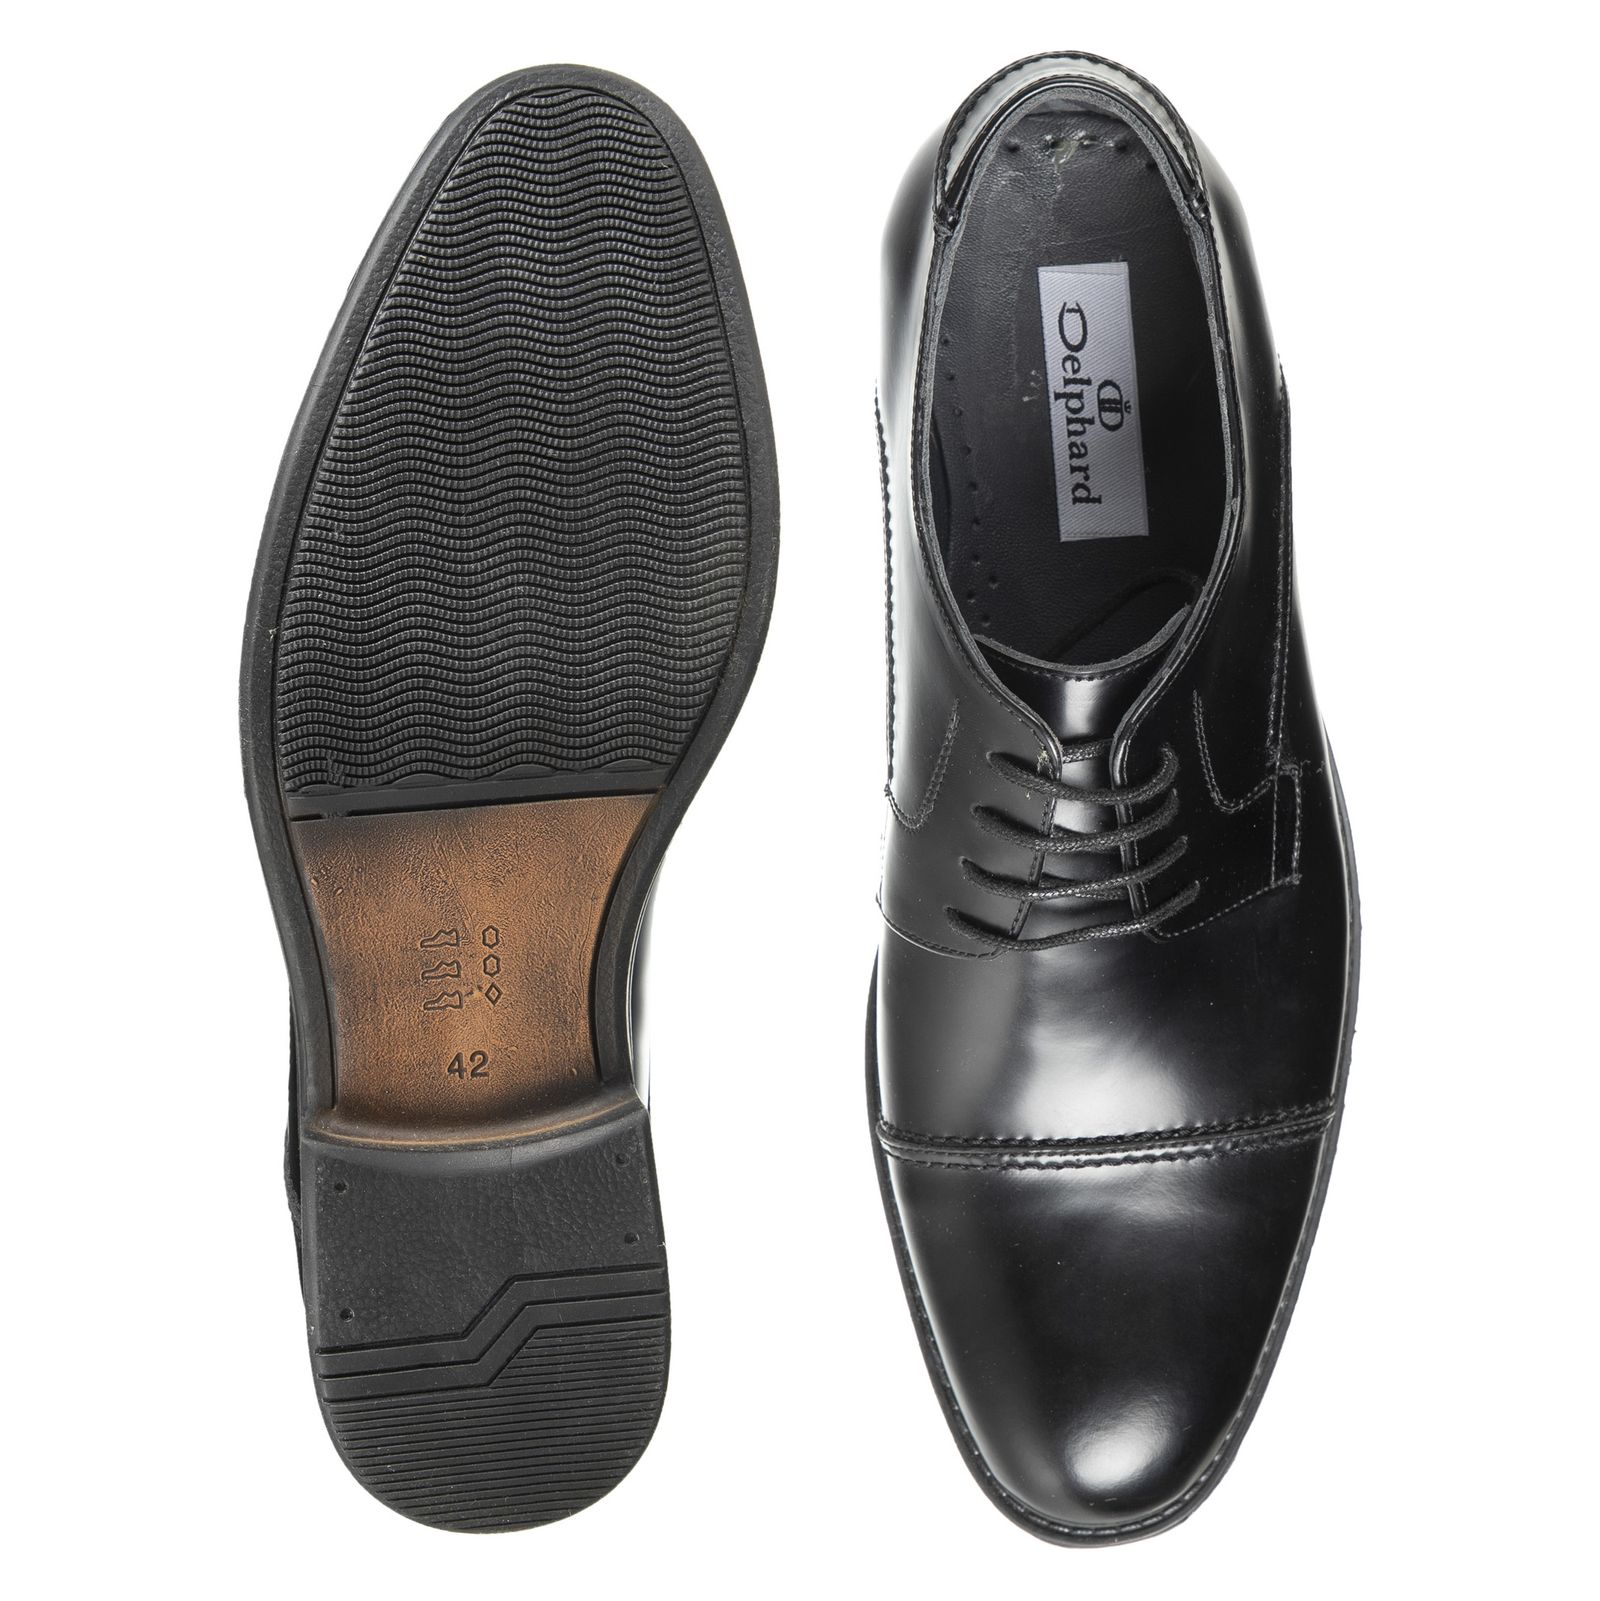 کفش مردانه دلفارد مدل 7219k503-101 - مشکی - 6